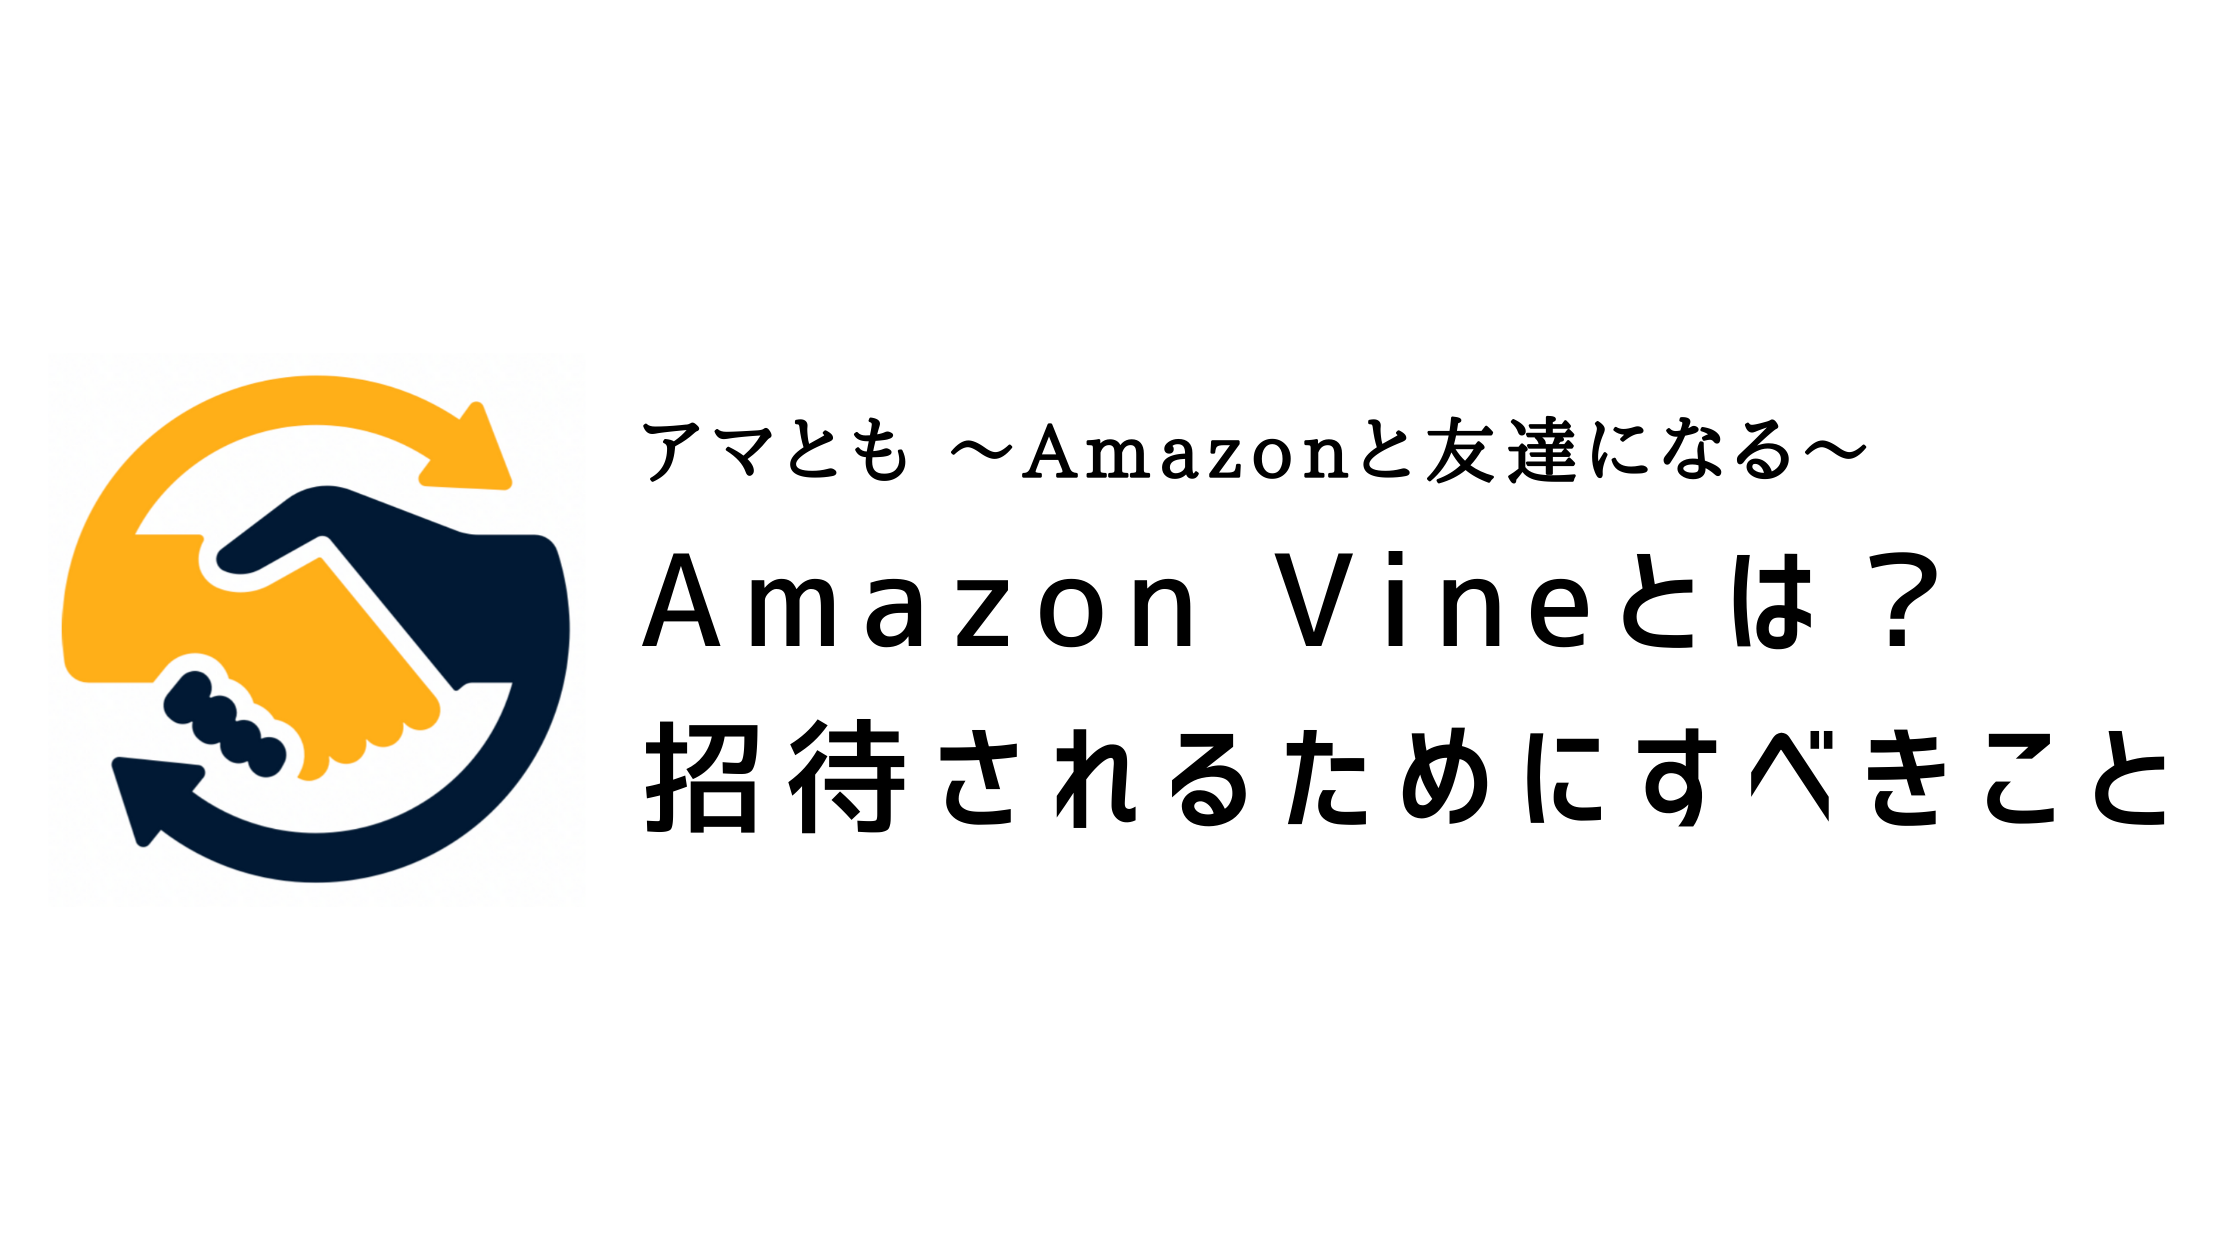 Amazon Vine